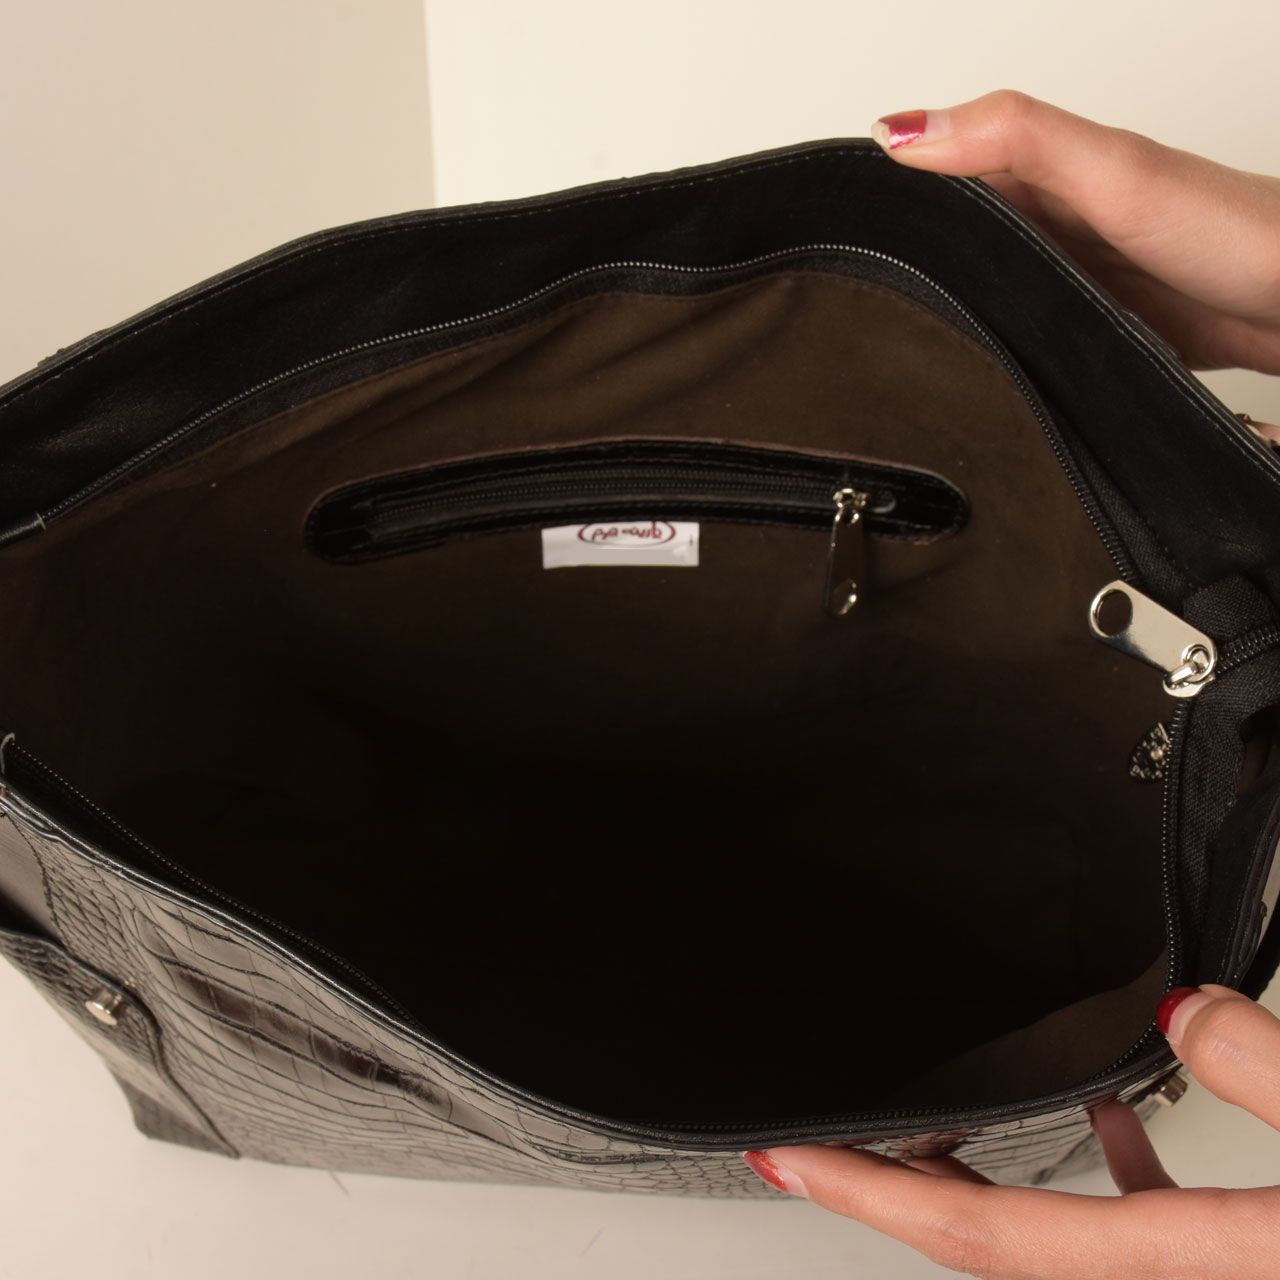  کیف دوشی زنانه پارینه چرم مدل V206-1 -  - 10